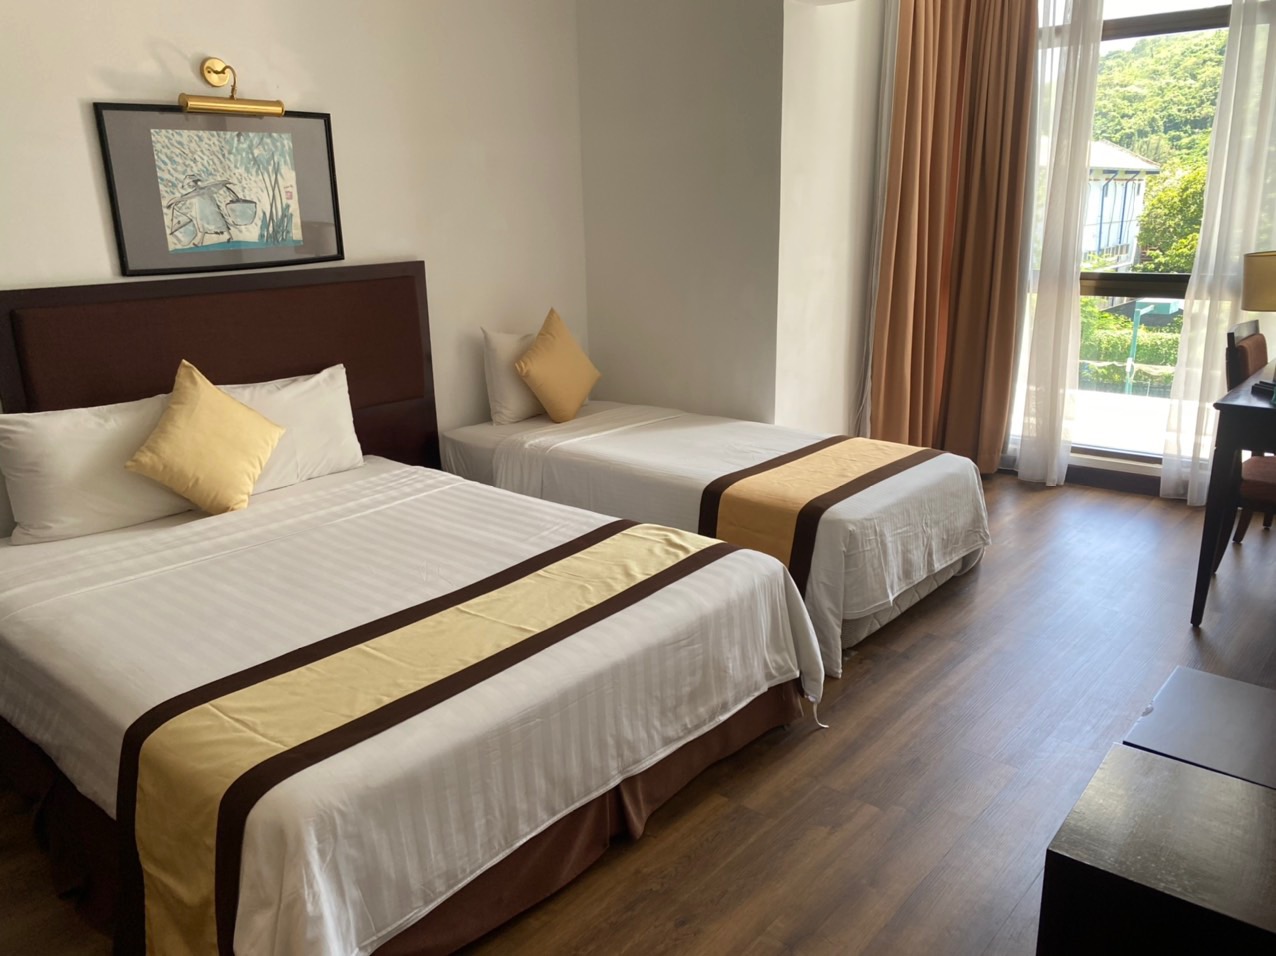 Phòng nghỉ tại khu căn hộ OSC Sunrise rộng rãi, thường là nơi lưu trú của các chuyên gia dầu khí trong thời gian công tác tại Việt Nam. 